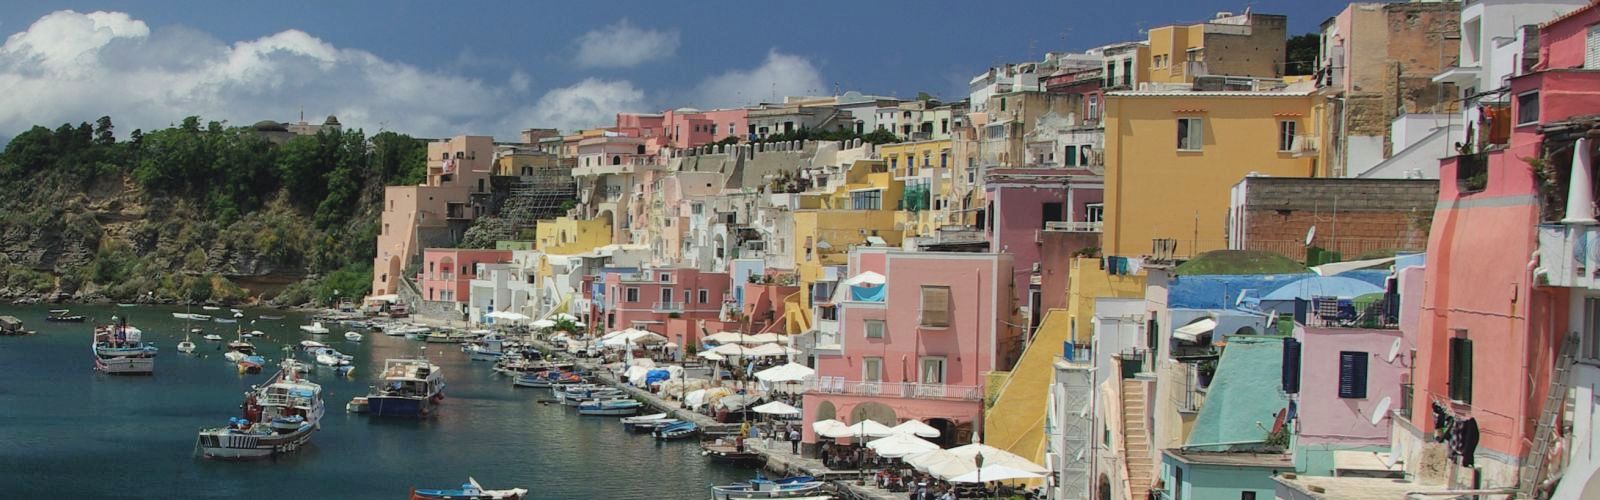 Cinque Terre - Magyar nyelvű programok az Amalfi-parton és Procida szigetén